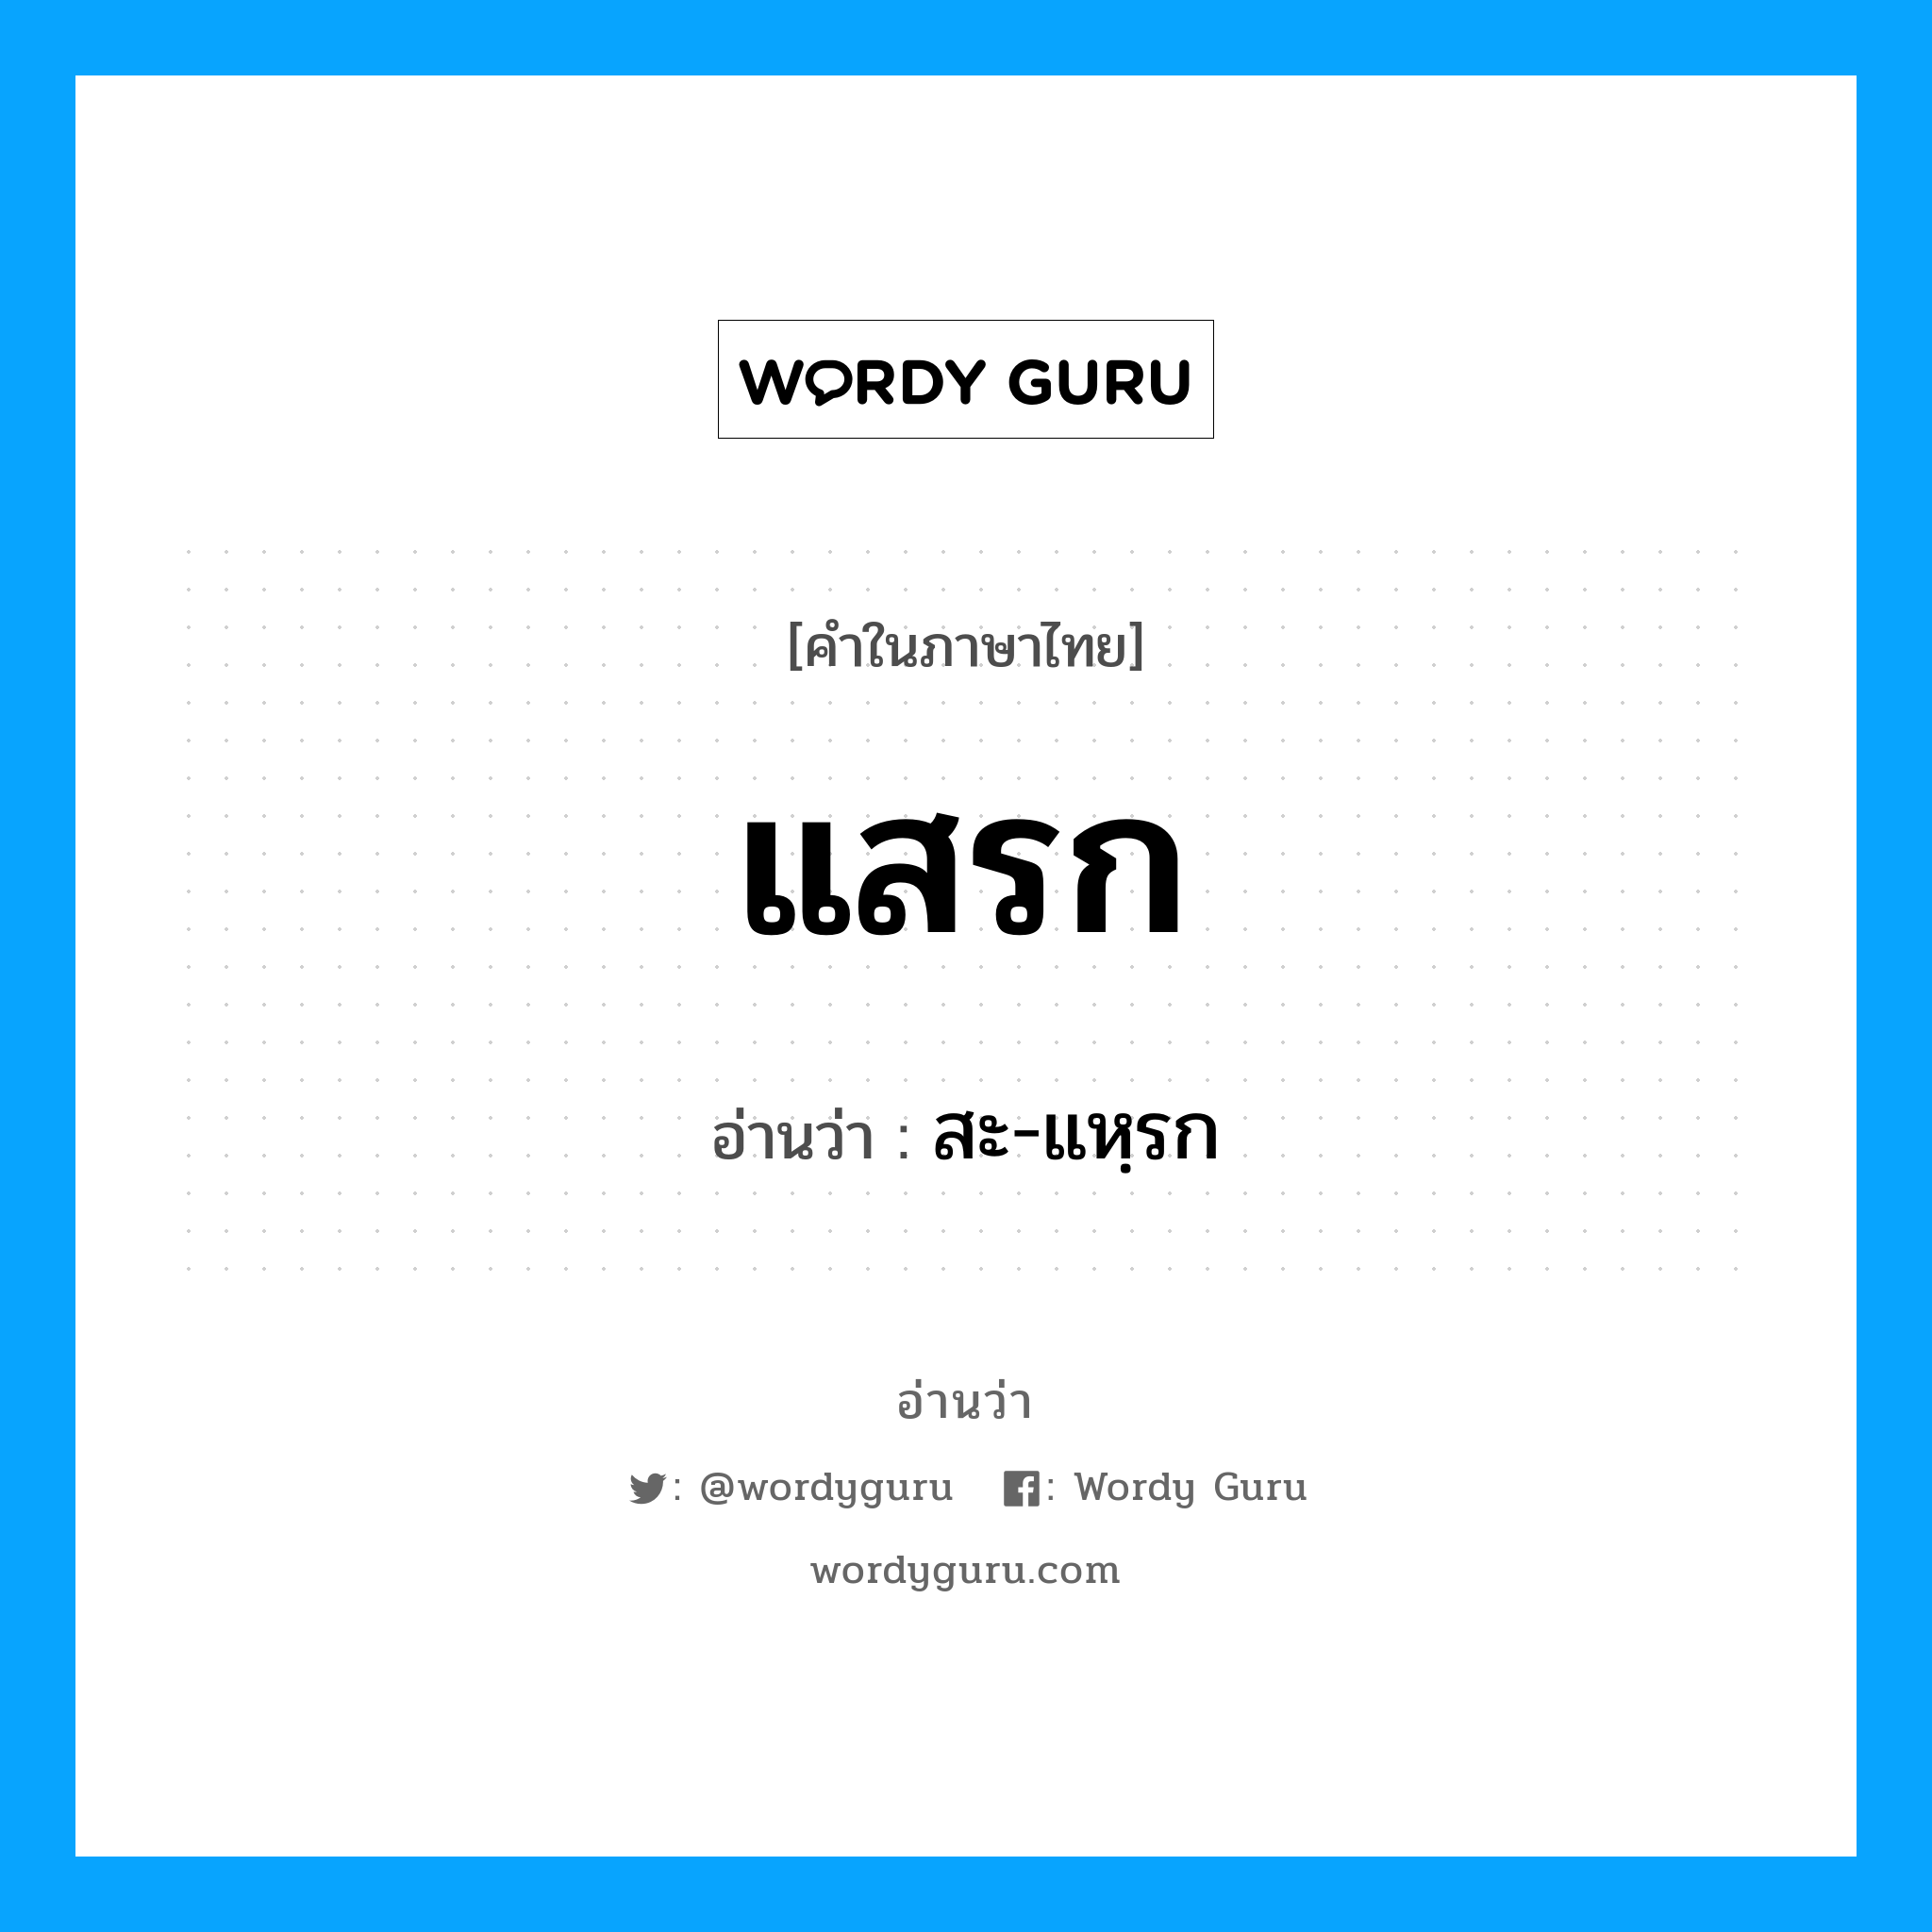 สะ-แหฺรก เป็นคำอ่านของคำไหน?, คำในภาษาไทย สะ-แหฺรก อ่านว่า แสรก